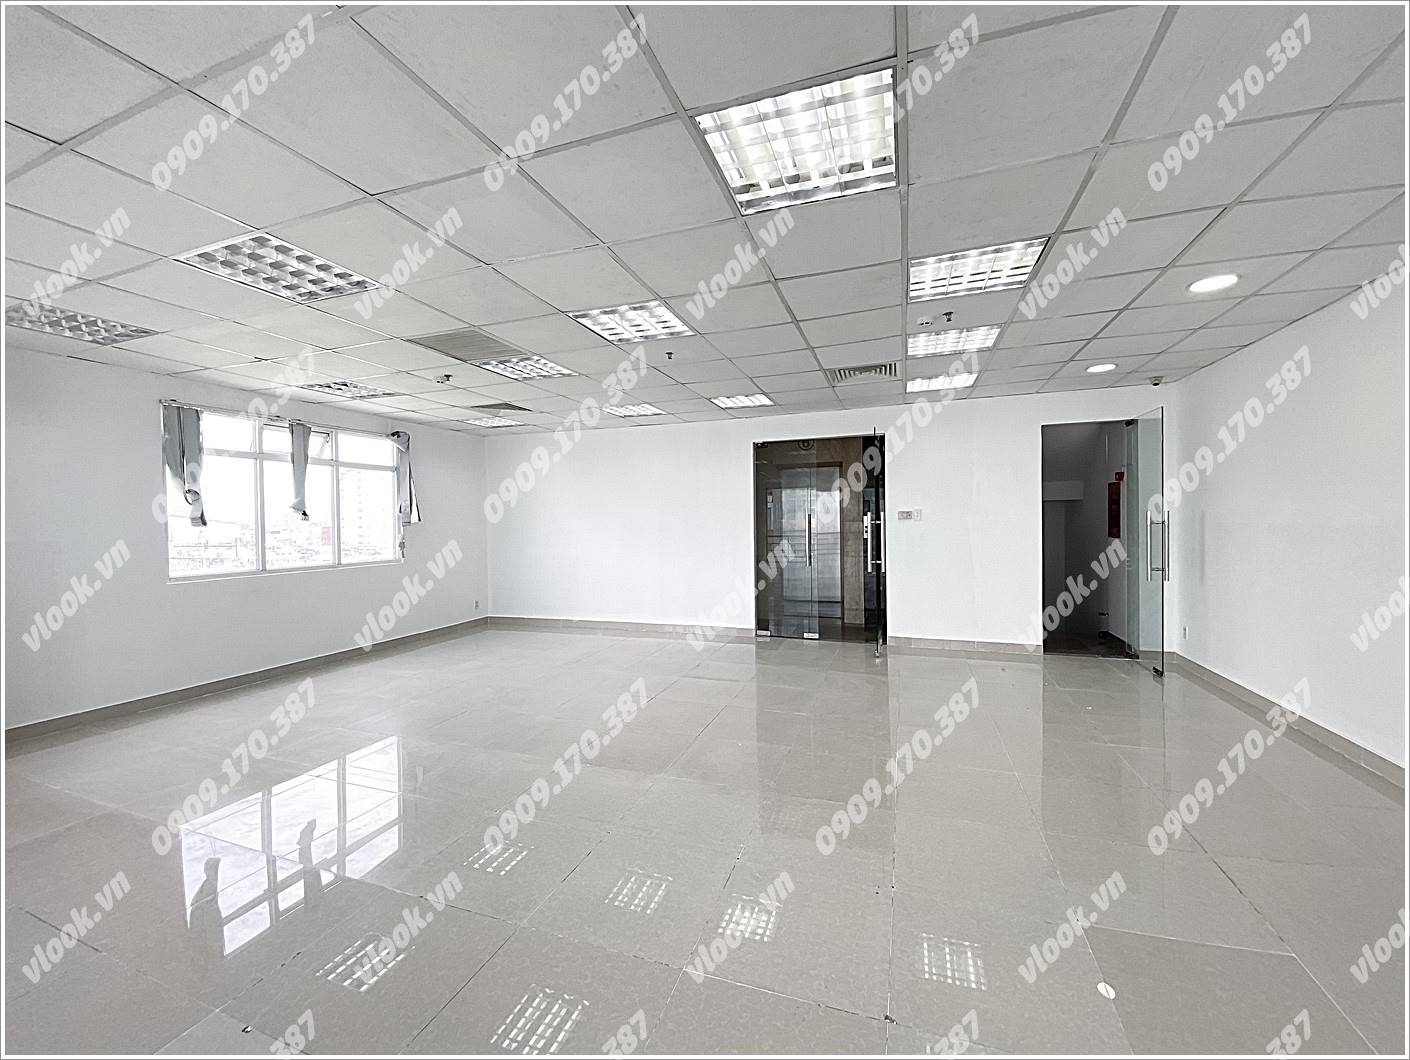 Cao ốc văn phòng cho thuê toà nhà Halo Building Phan Đăng Lưu, Quận Phú Nhuận, TPHCM - vlook.vn